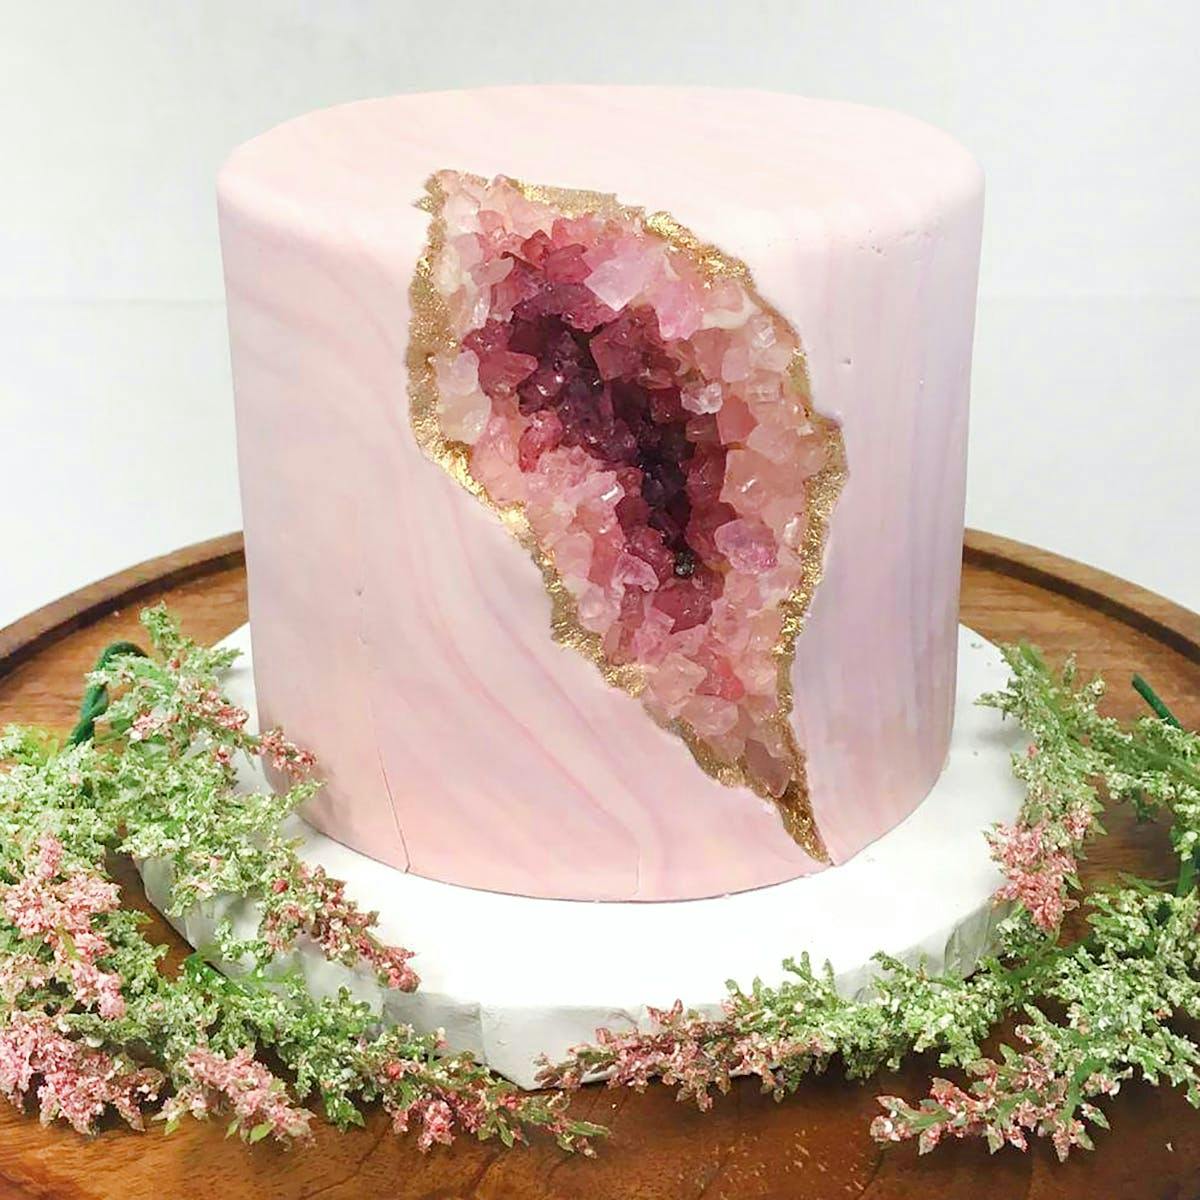 Isomalt Crystal Cake Topper Tutorial! - YouTube